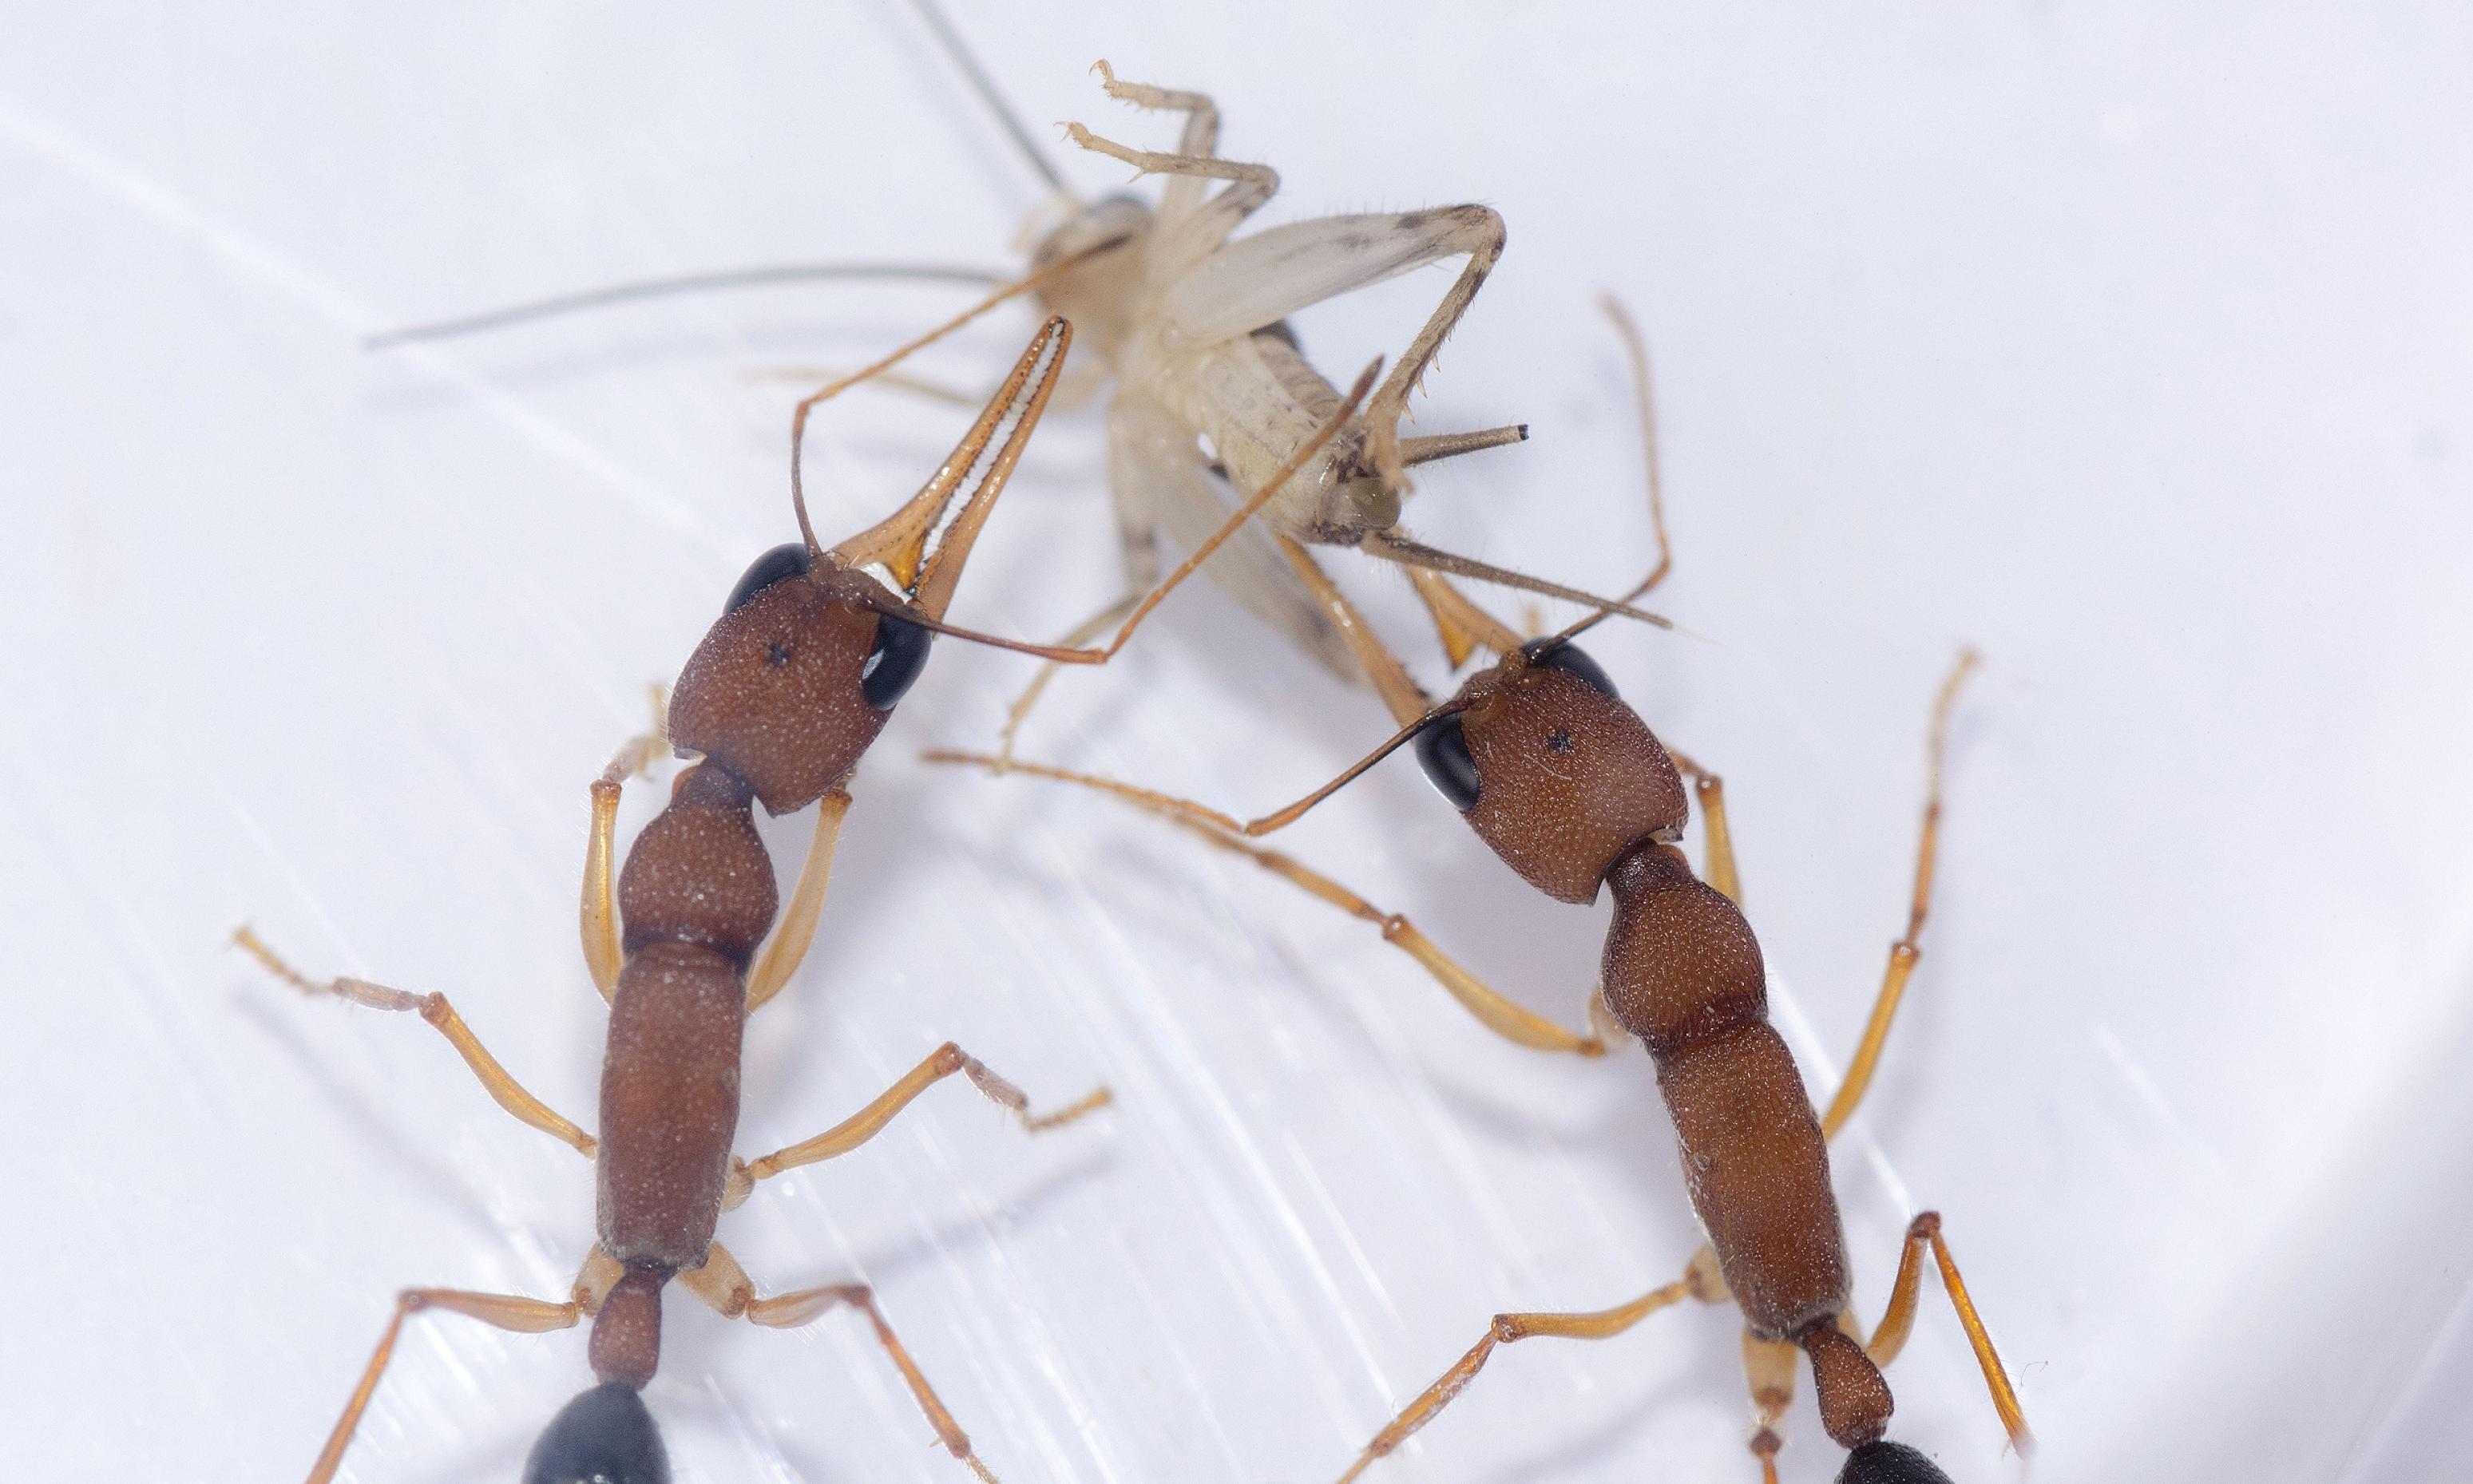 Zwei große, dunkle Ameisen zerren gemeinsam an einer kleinen, fast durchsichtigen Grille.